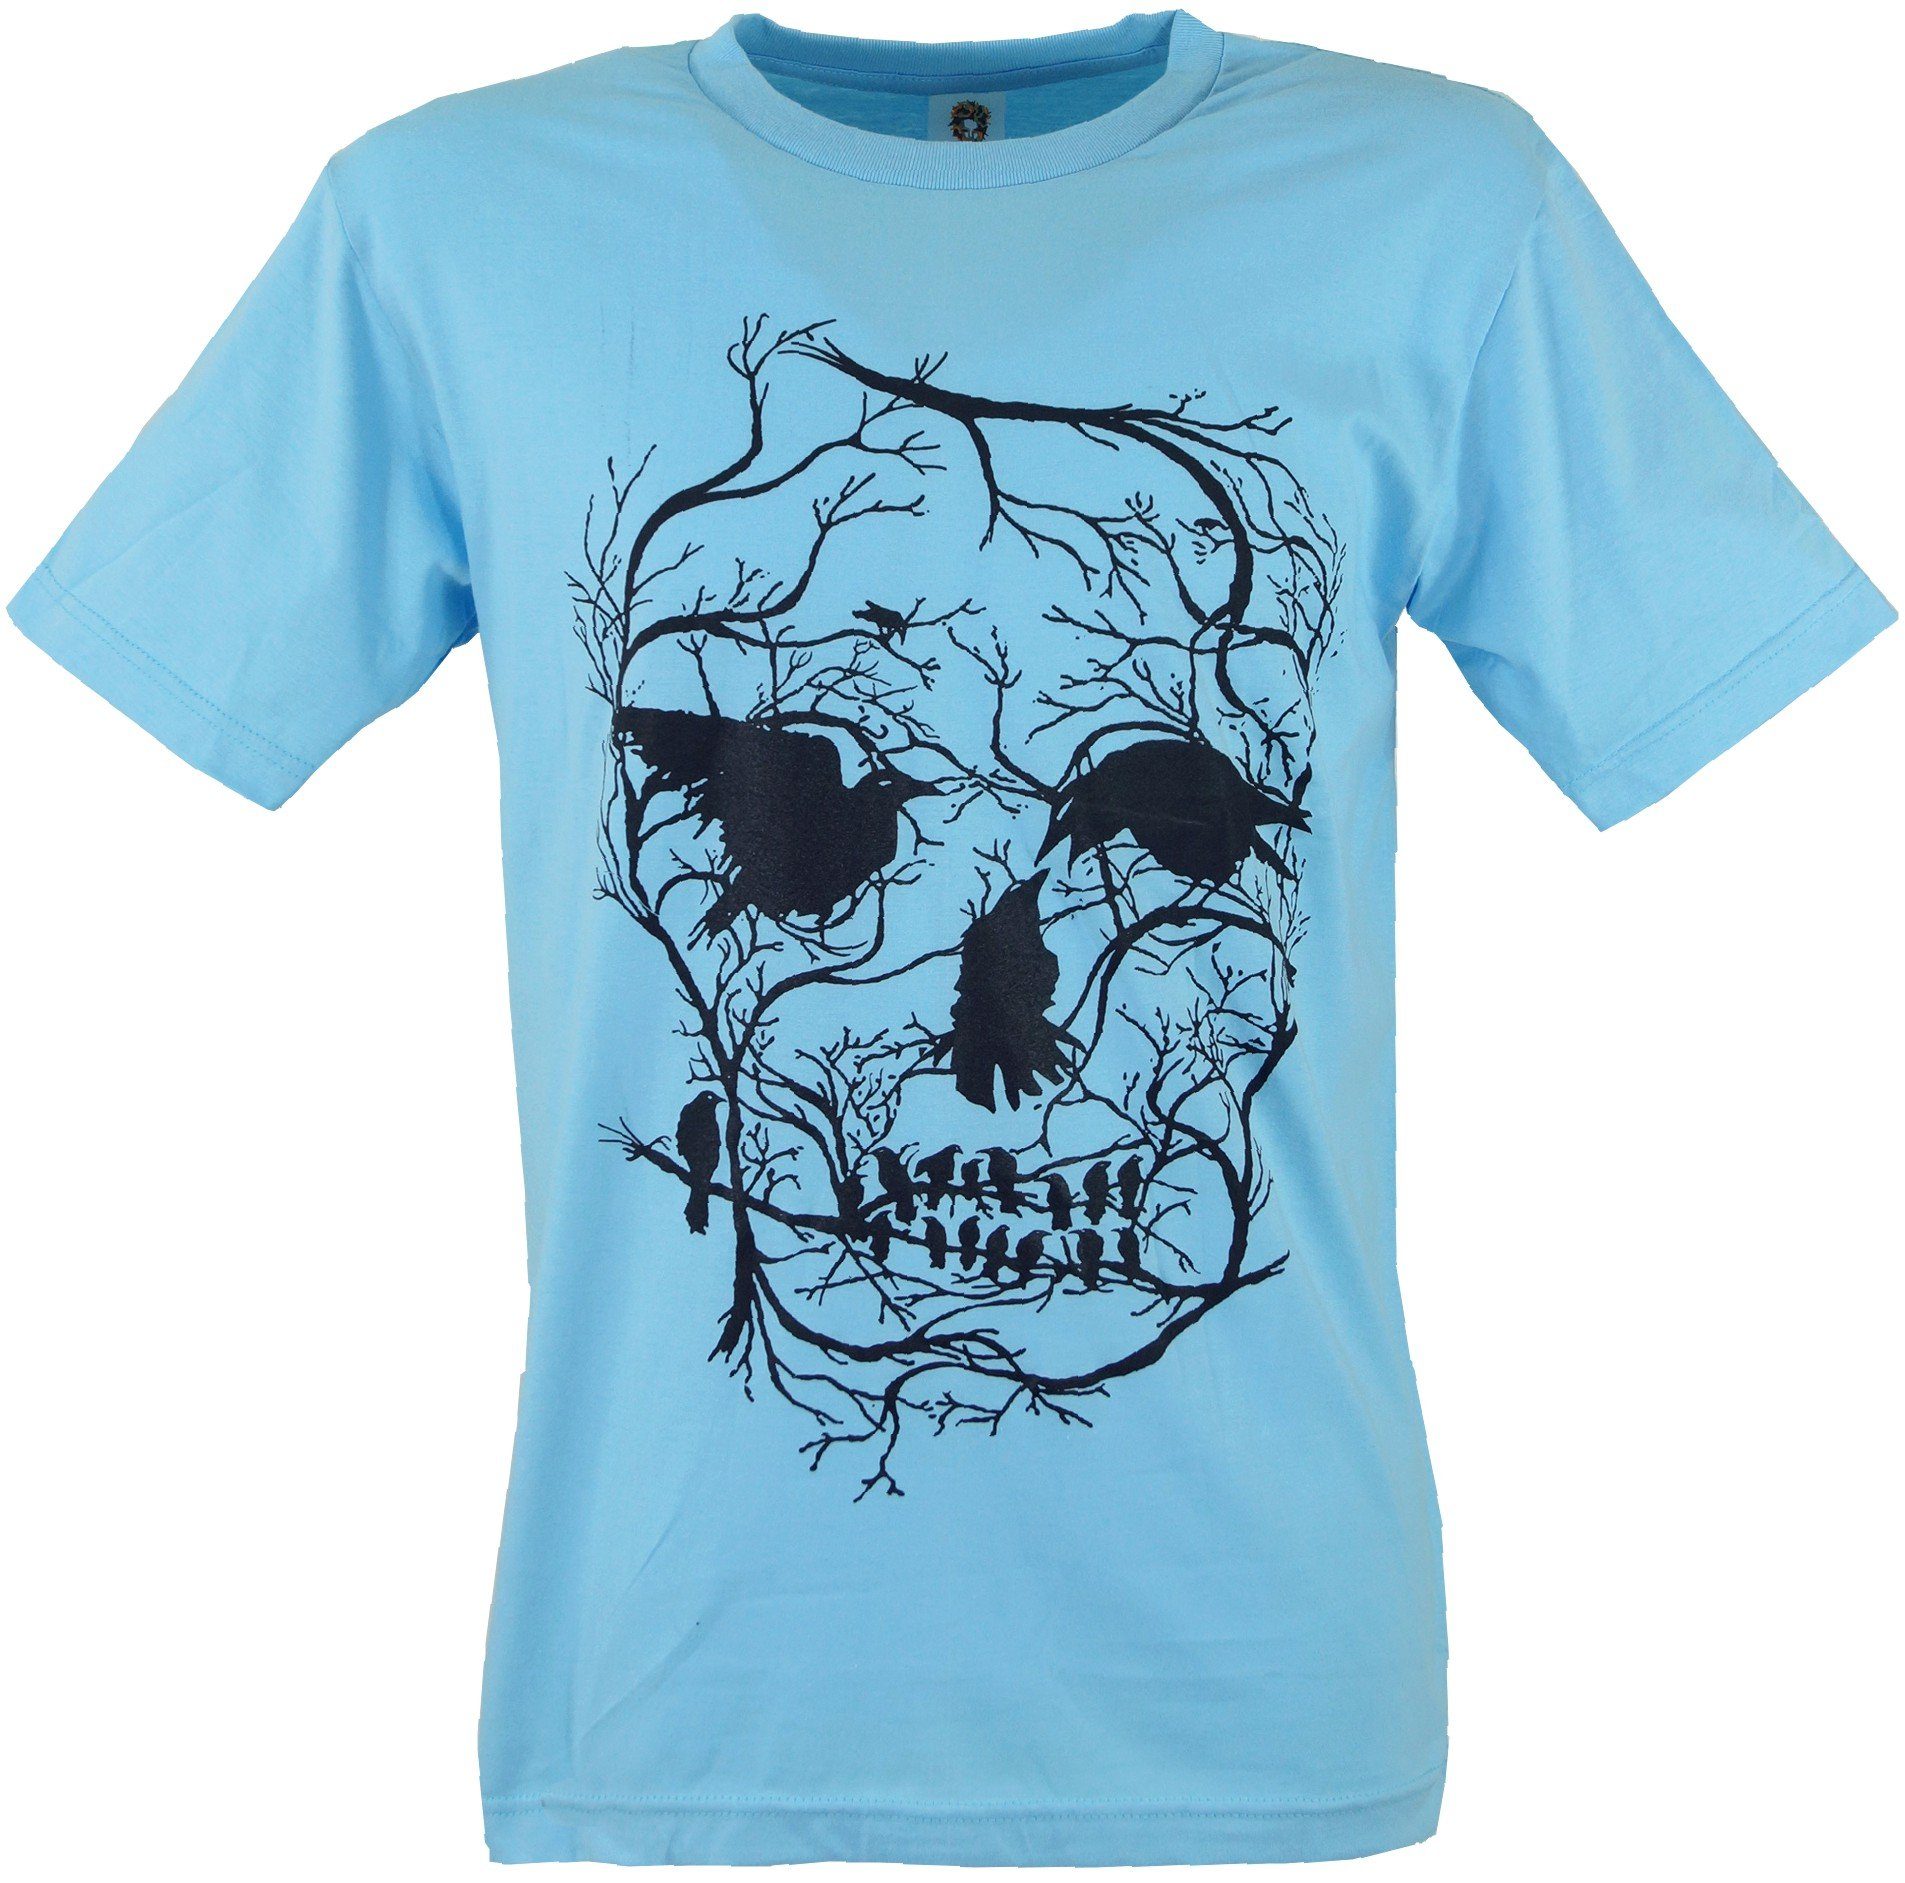 Krähen Bekleidung Art Guru-Shop T-Shirt alternative Fun T-Shirt Retro -